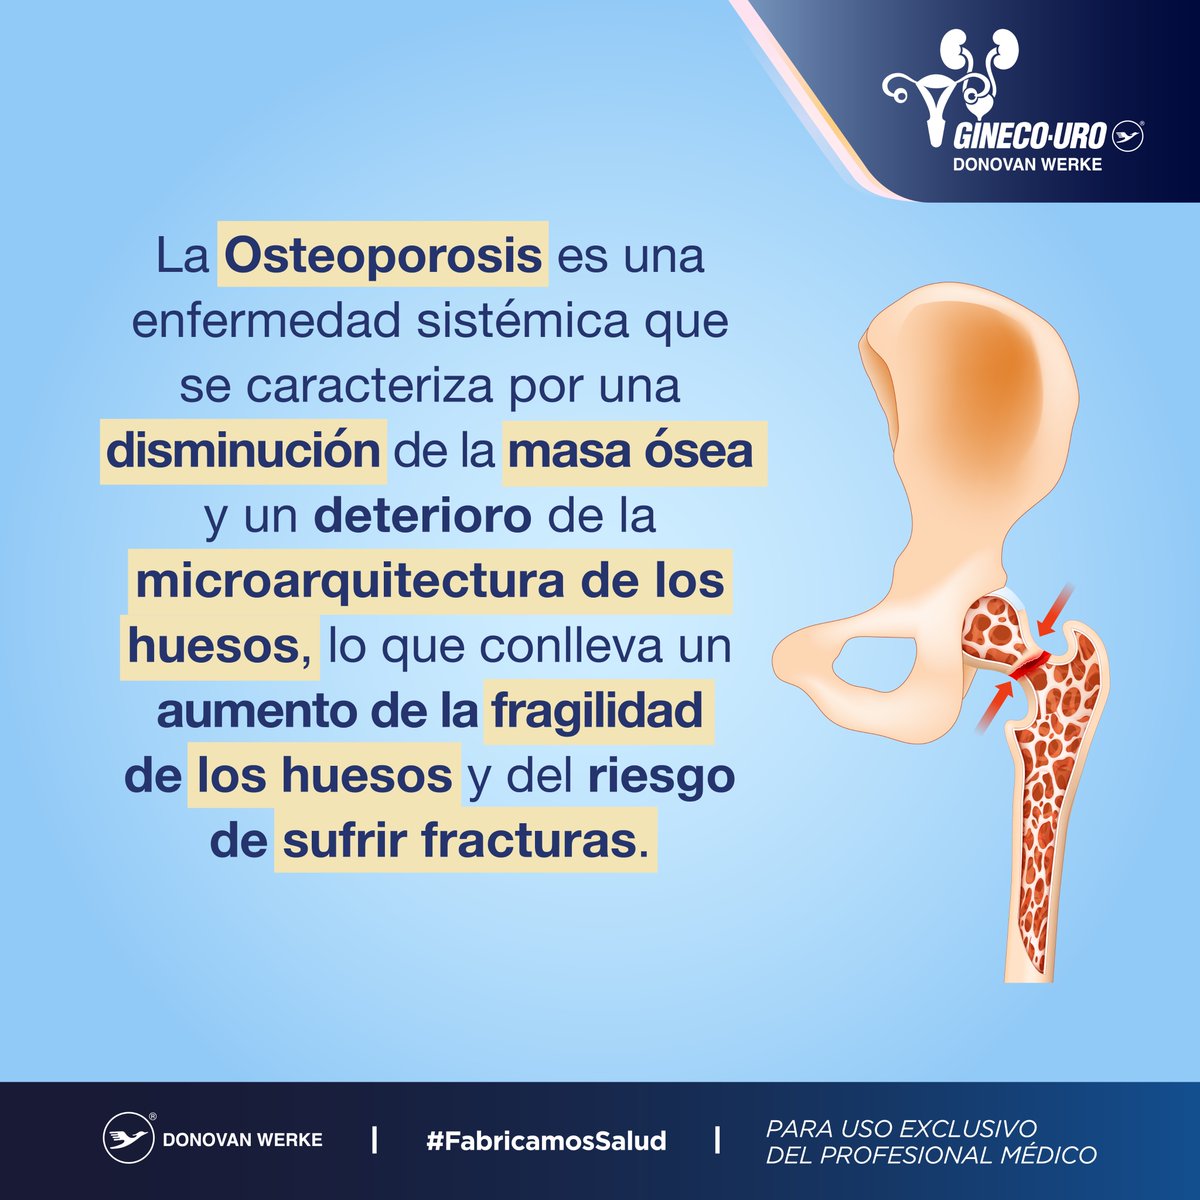 👨‍⚕️¿Qué sabes sobre la Osteoporosis?
 #Salud #SaludPreventiva

@Donovan_Werke 
#FabricamosSalud